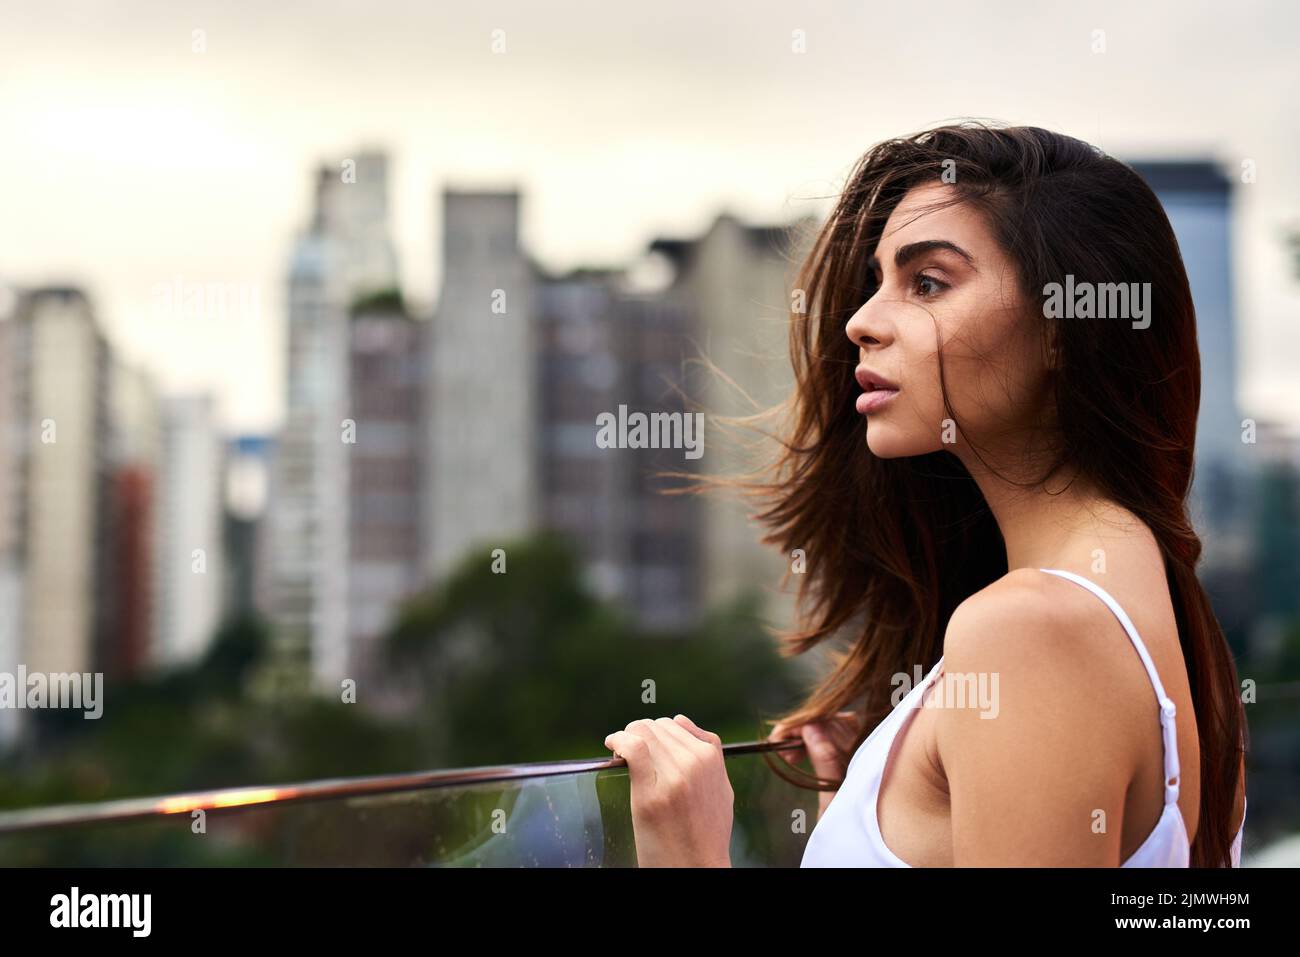 Bellezza naturale. Una giovane donna attraente in piedi su un balcone all'aperto durante il giorno. Foto Stock